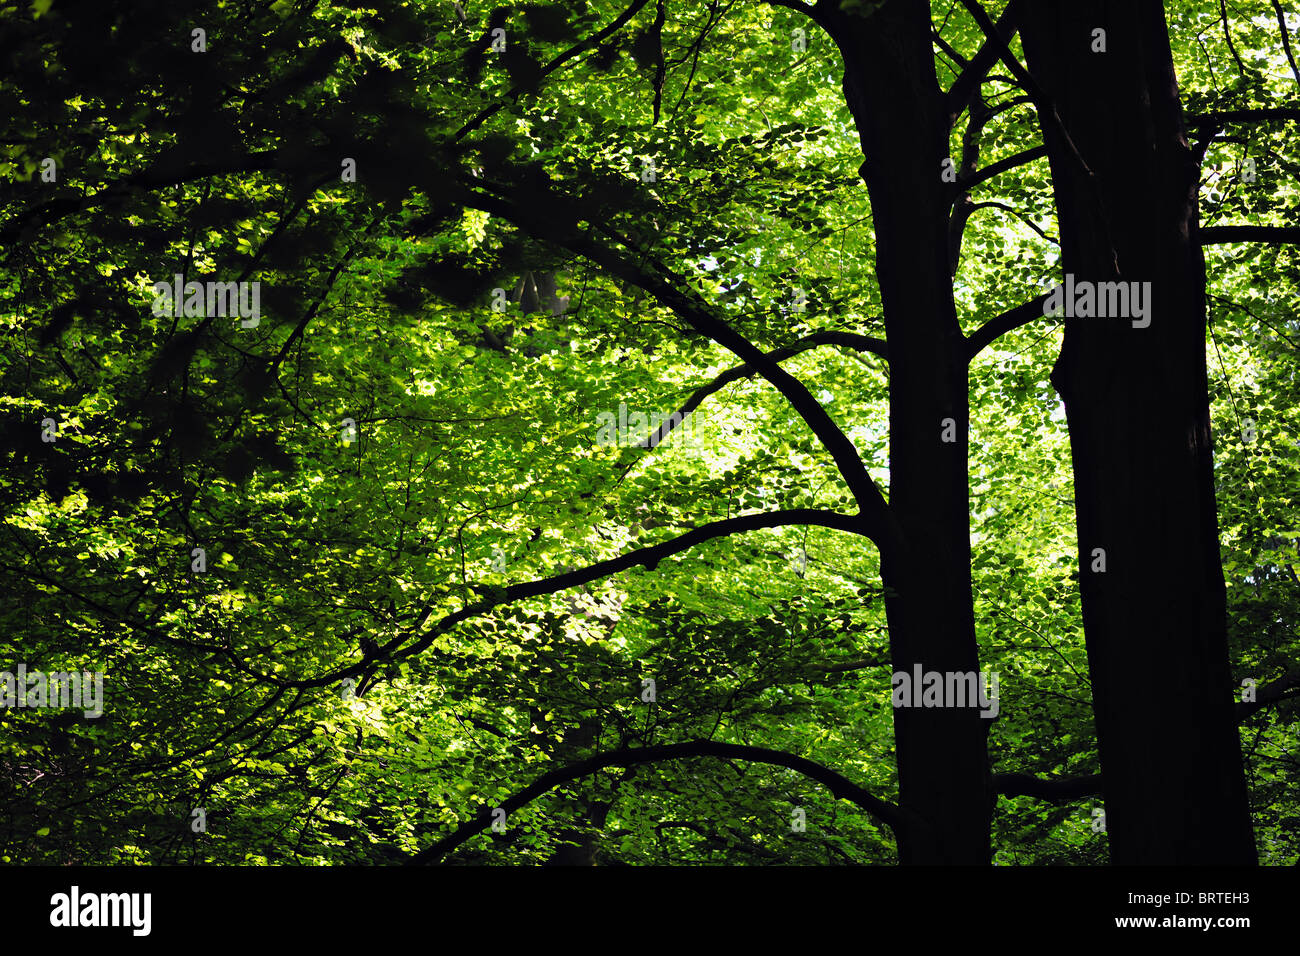 Hinterleuchtete Baumkrone Laub abstrakt mit Bäume und Äste im Vordergrund Stockfoto